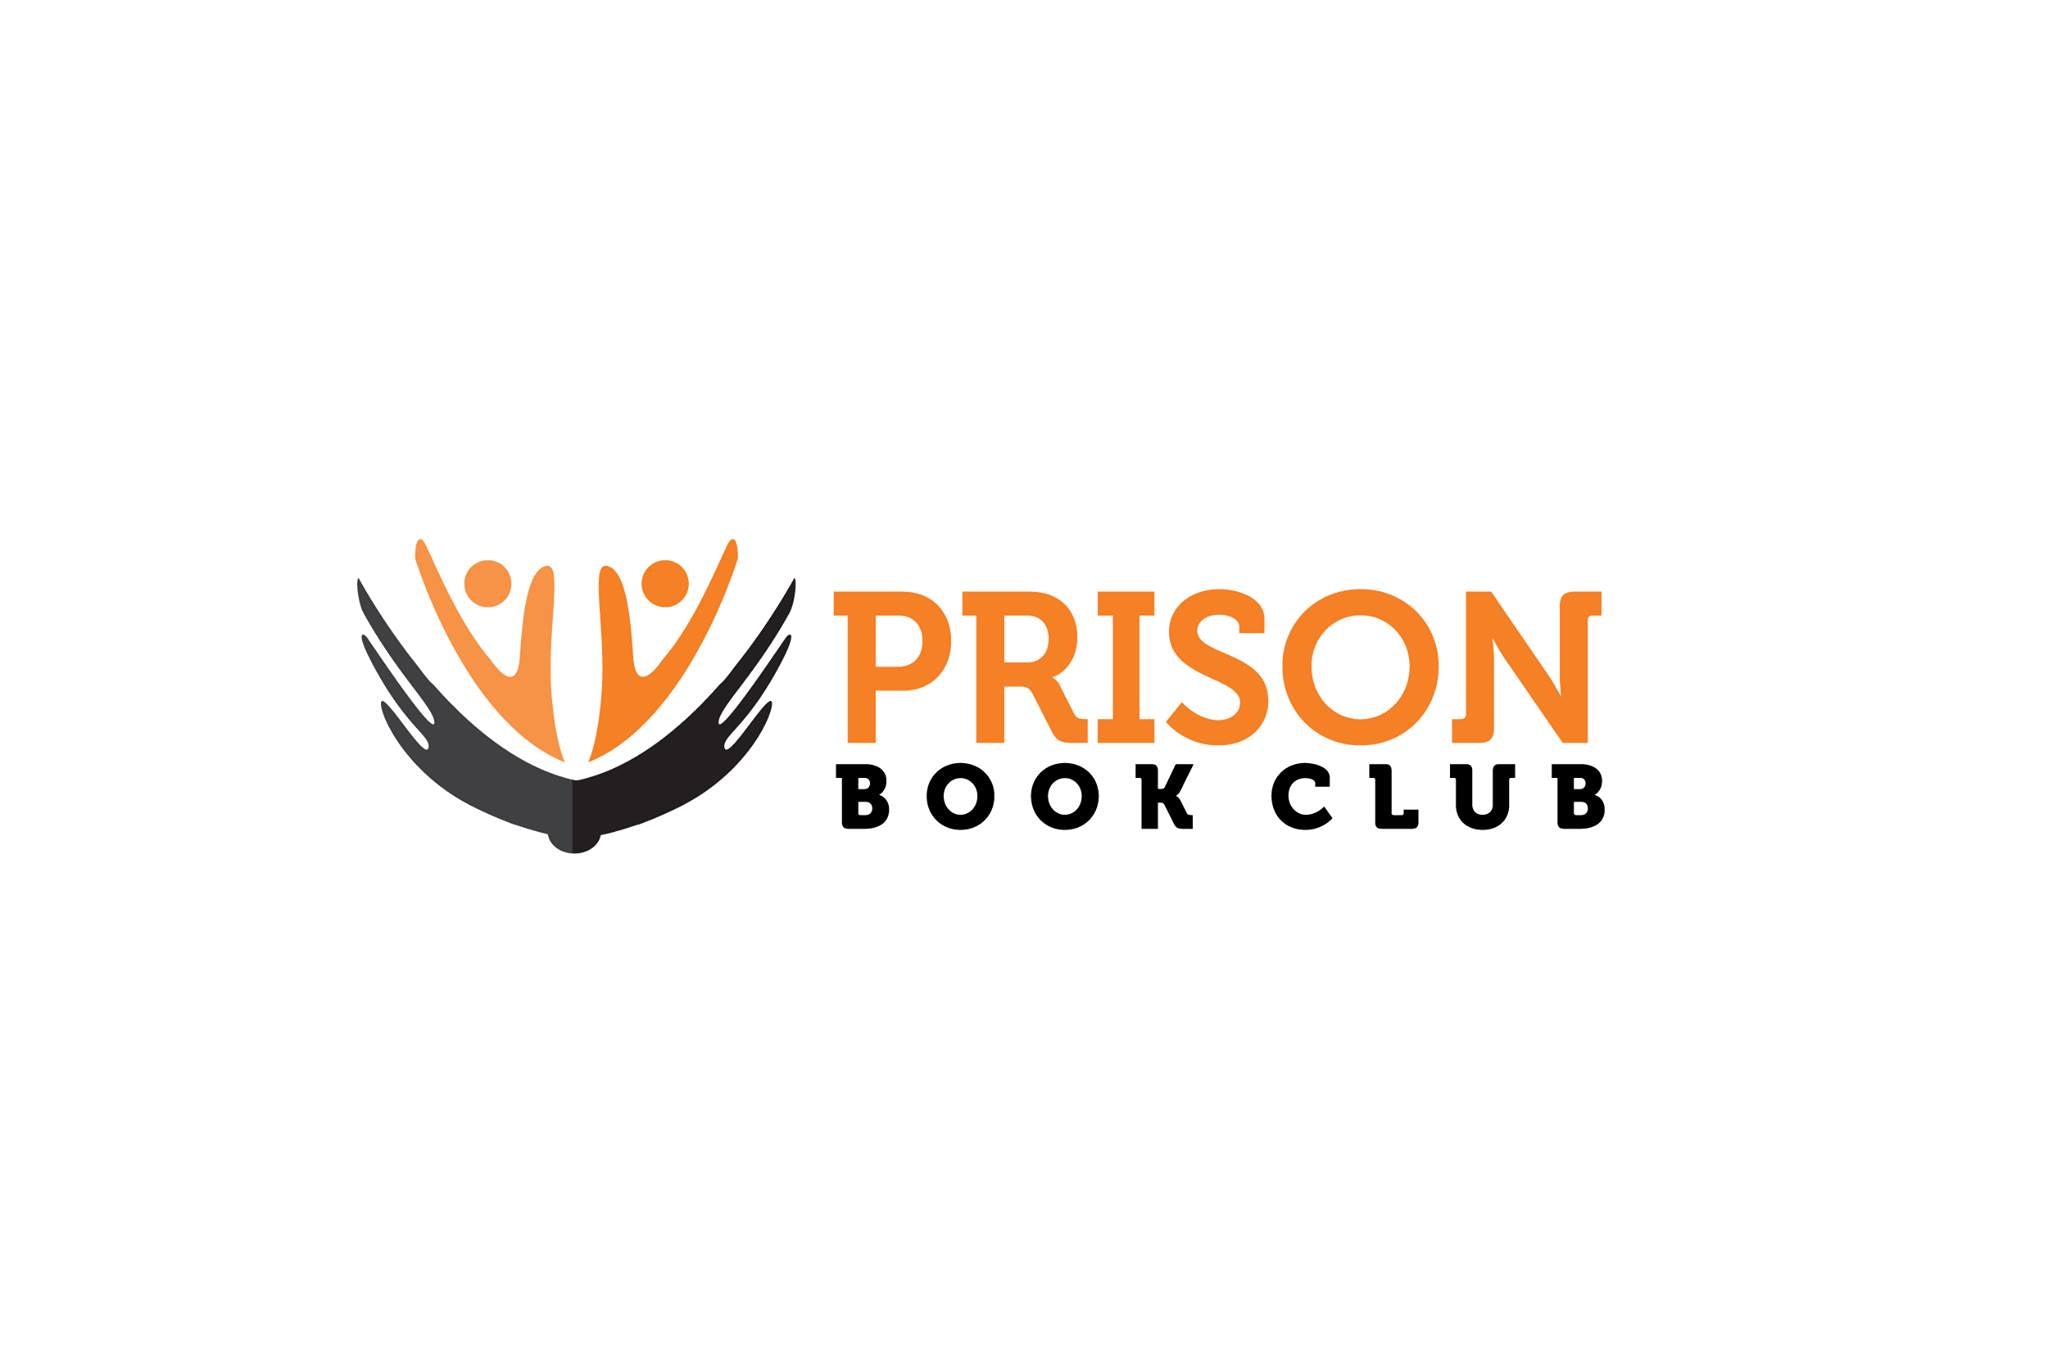 Prison Book Club